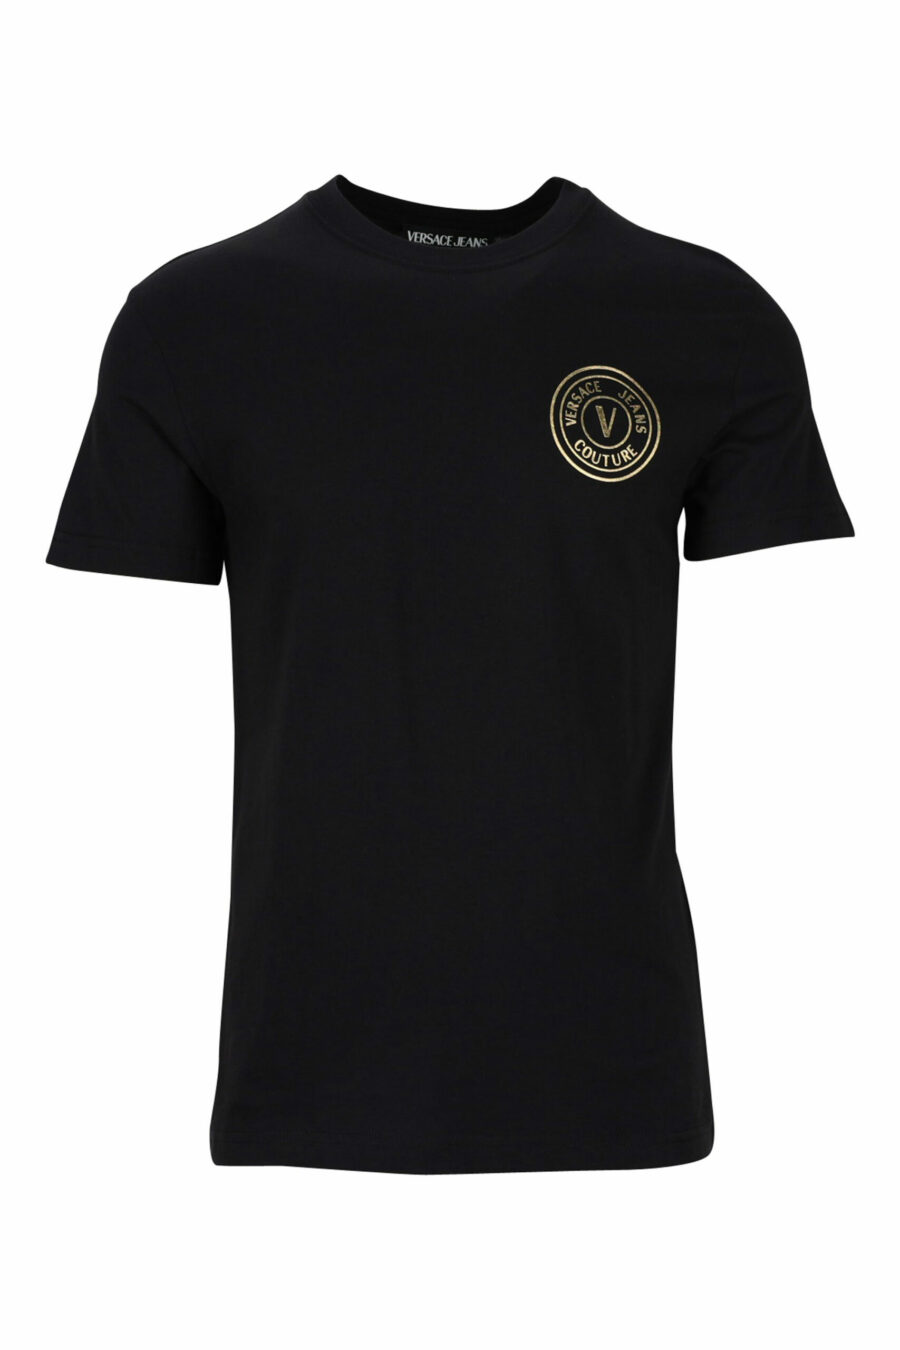 Camiseta negra con minilogo circular dorado - 8052019468465 scaled